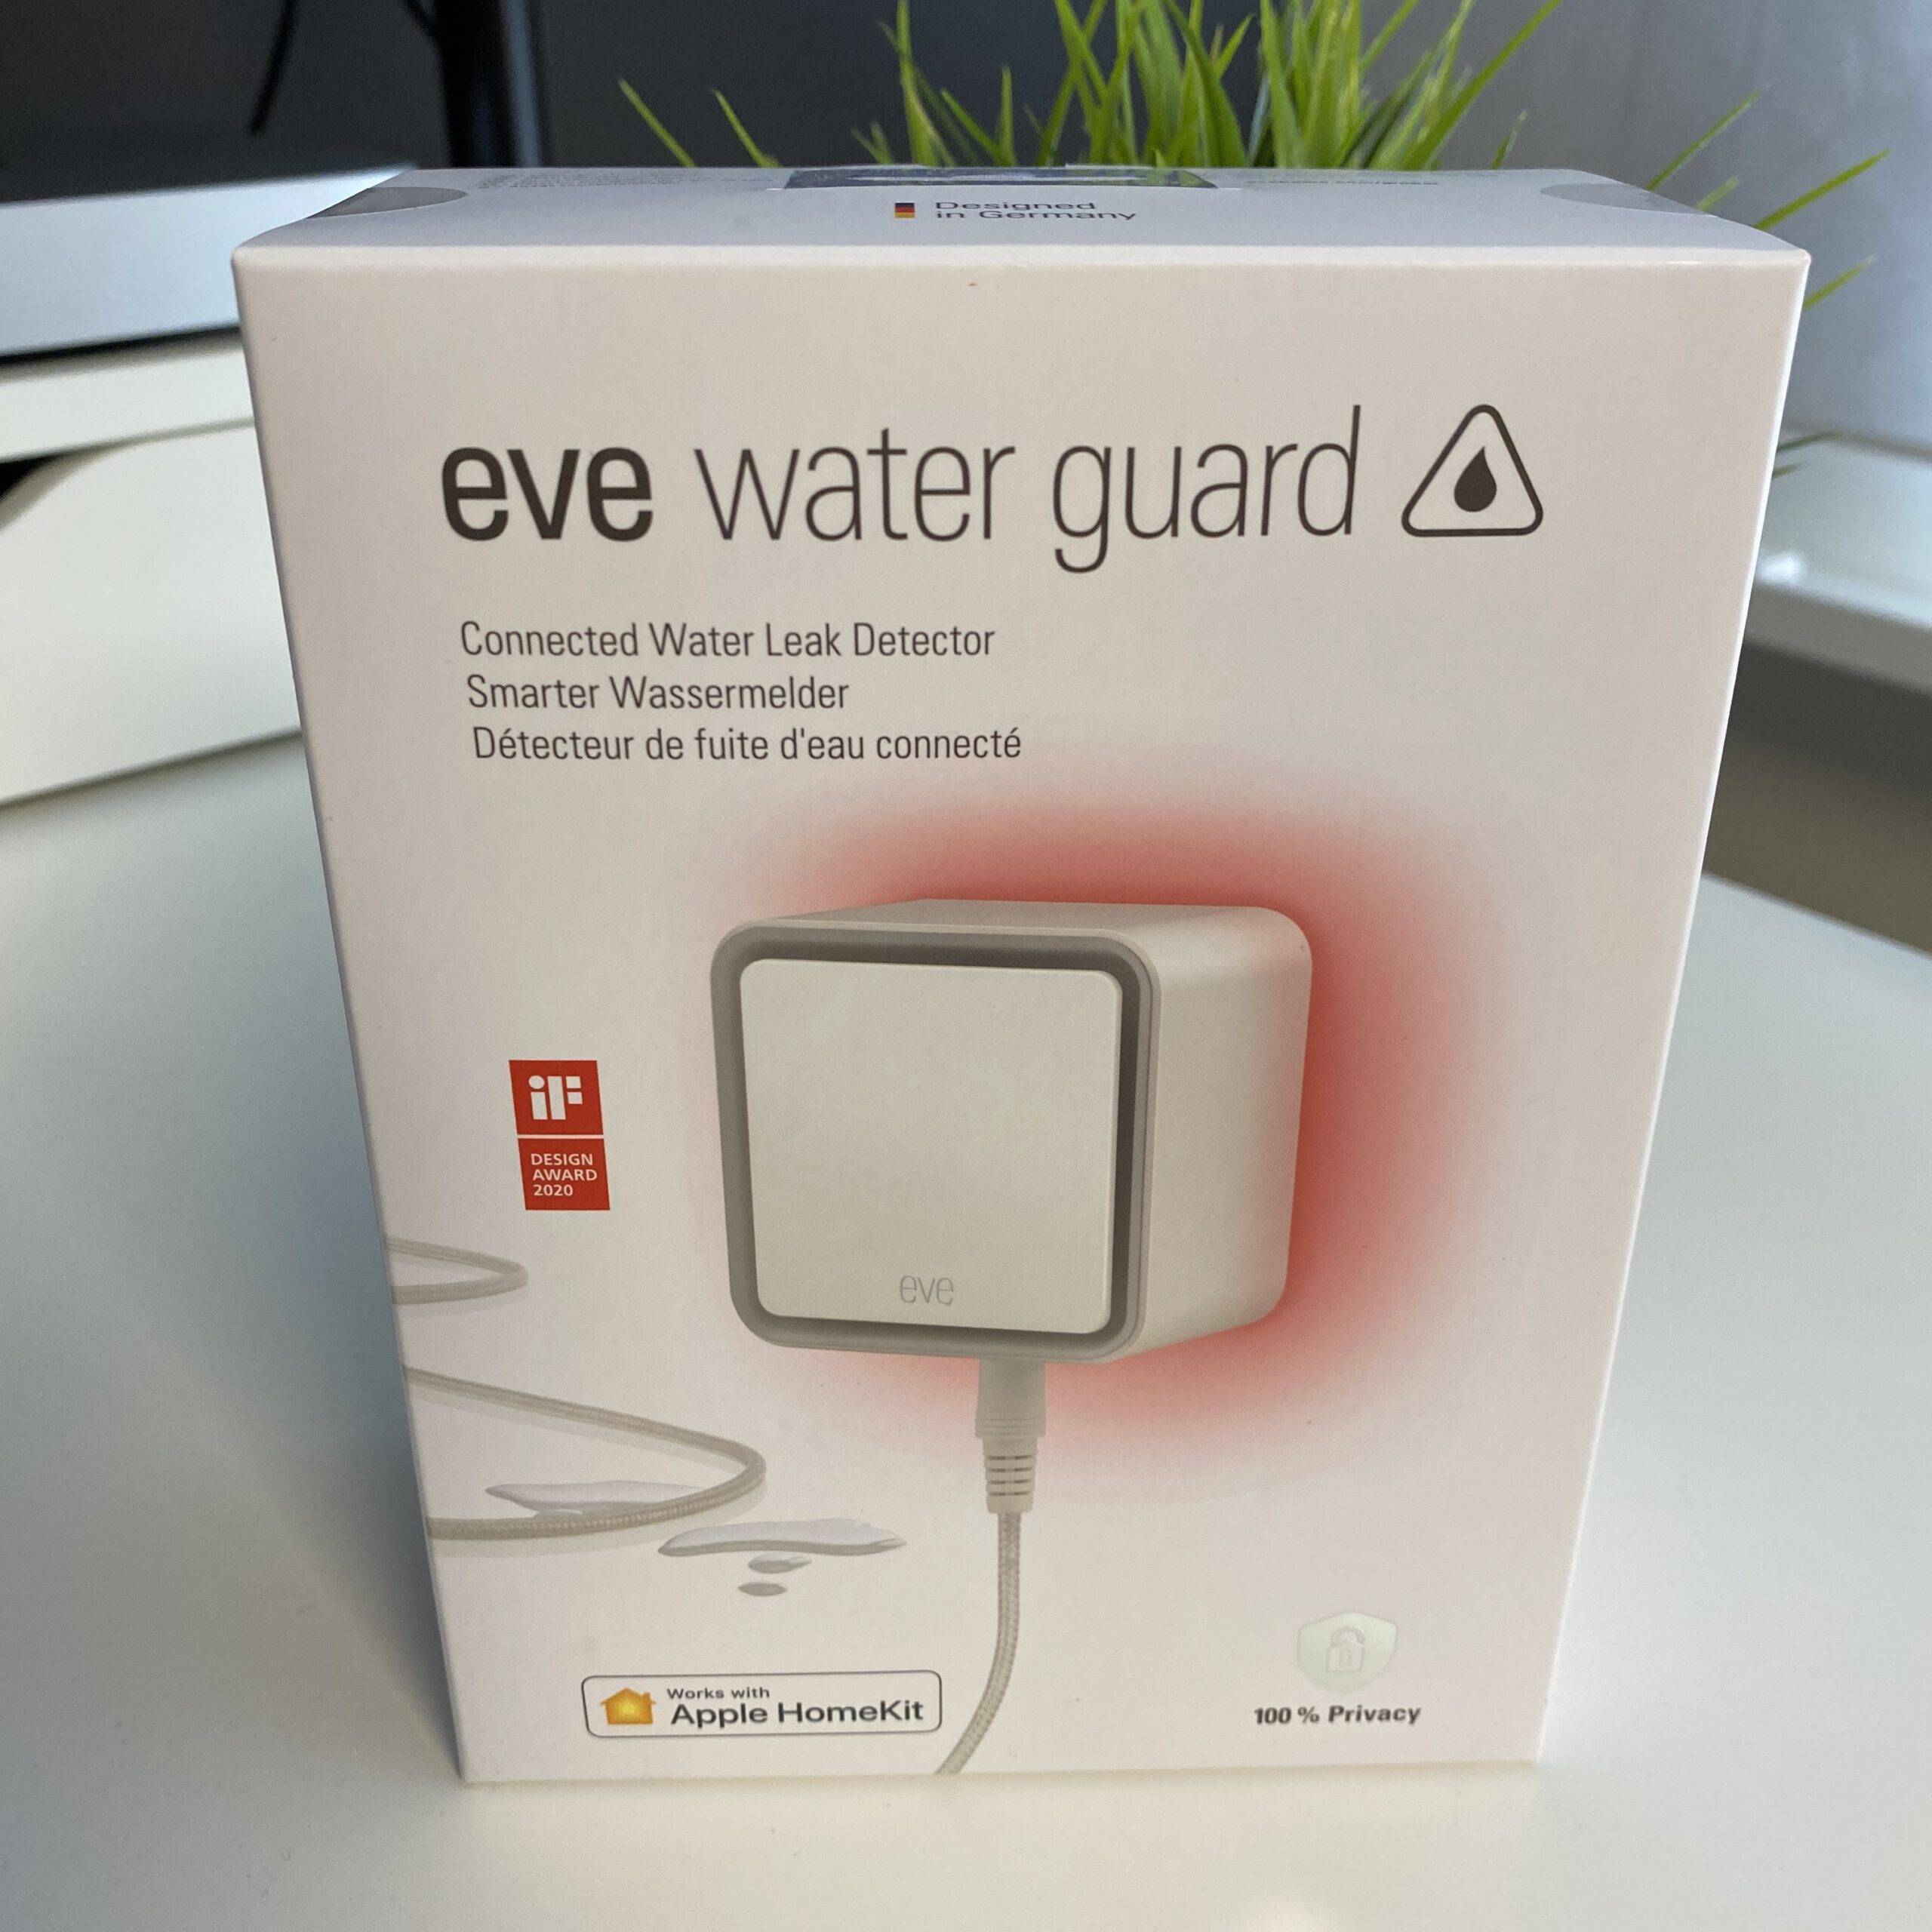 eve water guard setzt auf Apple Homekit und 100% Datenschutz